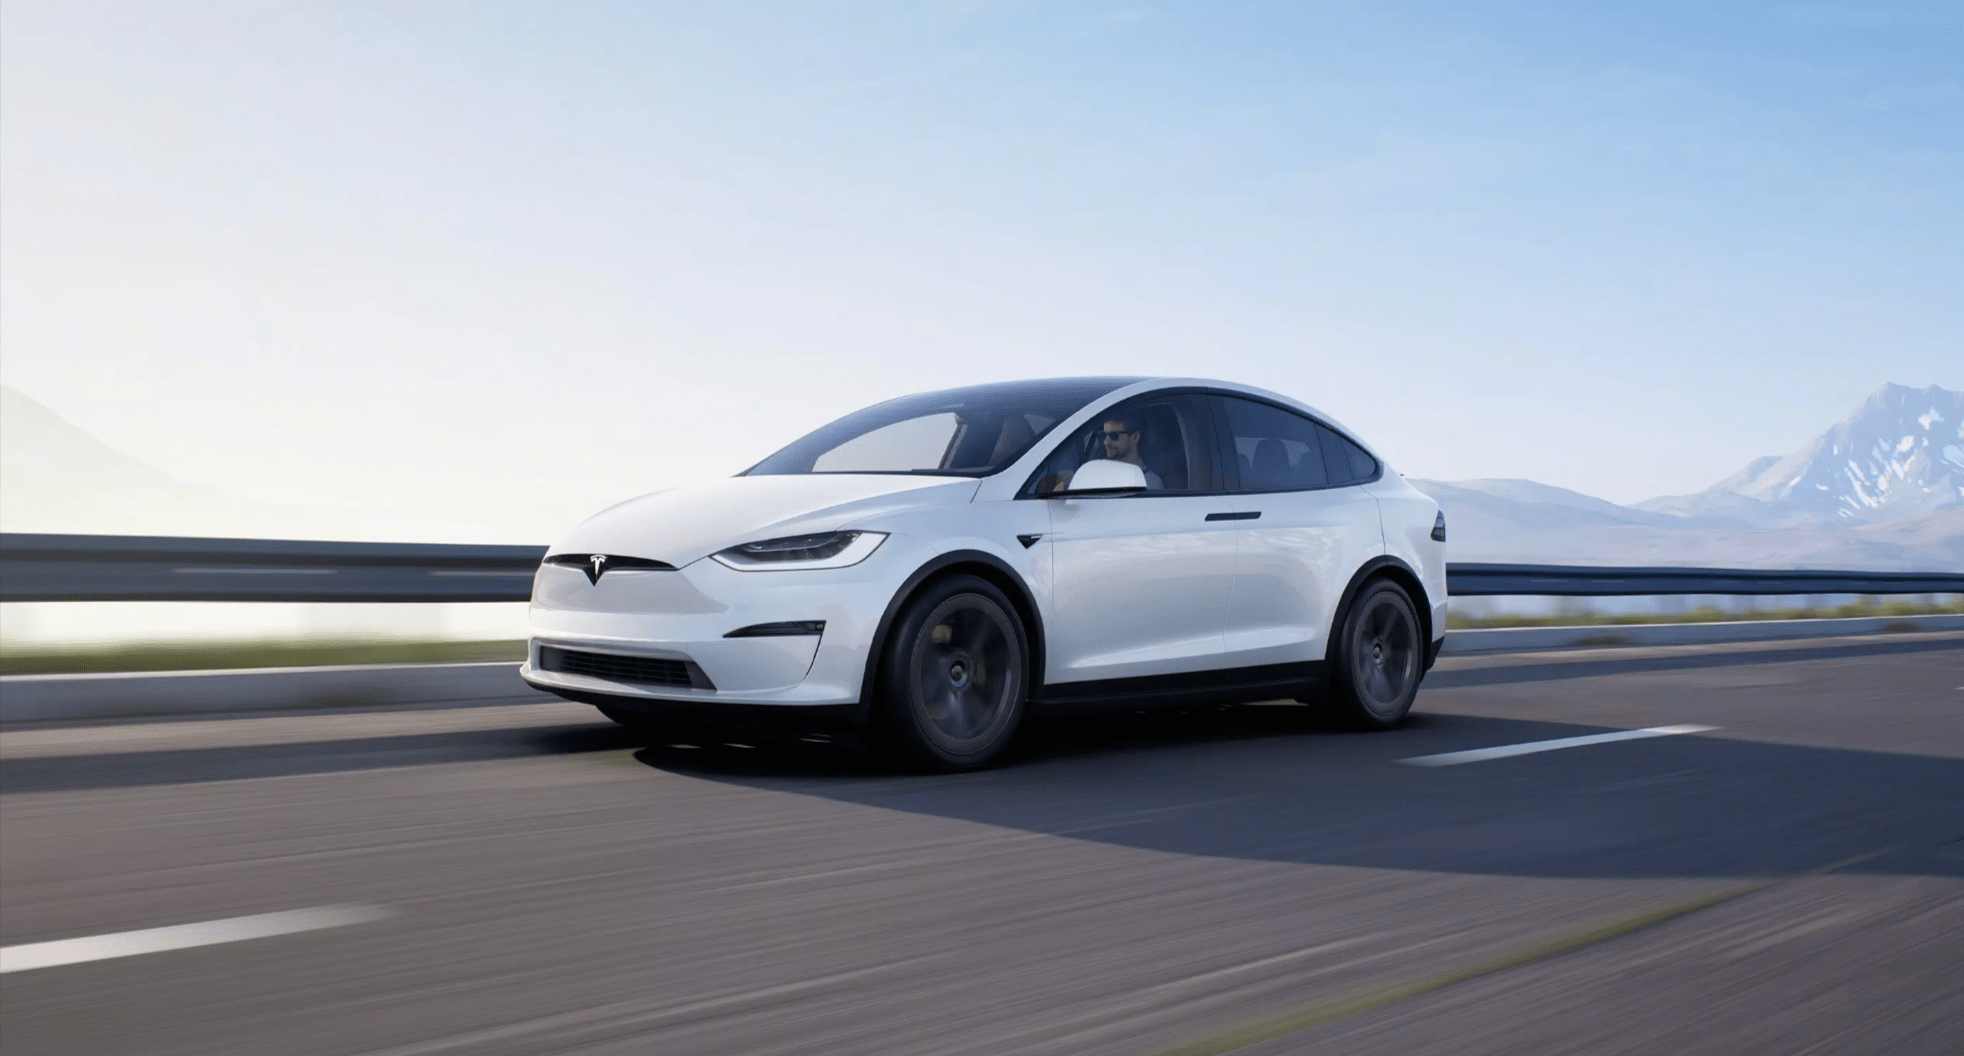 Biały samochód elektryczny Tesla Model X jedzie po autostradzie z rozmytym tłem przedstawiającym góry i niebo.